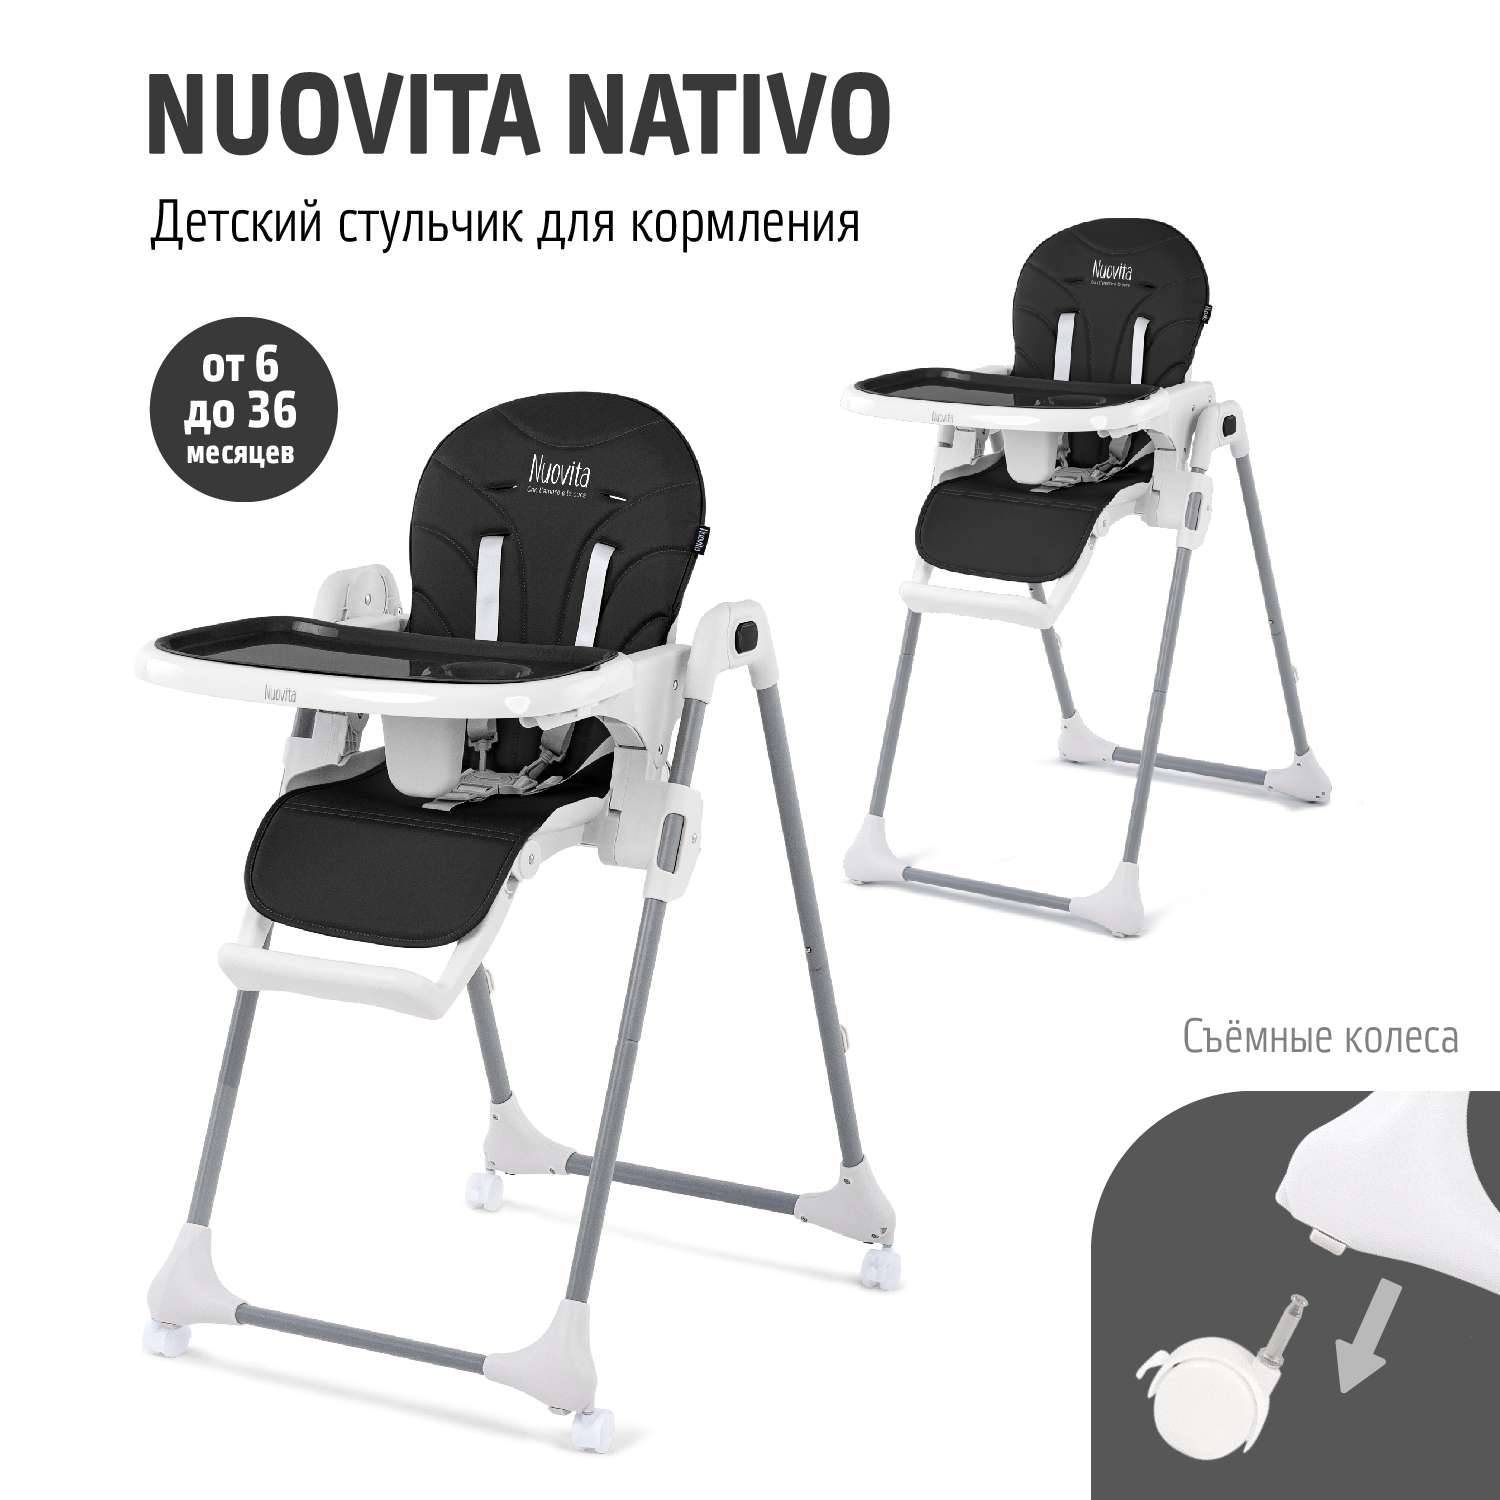 Стульчик для кормления Nuovita Nativo черный - фото 2